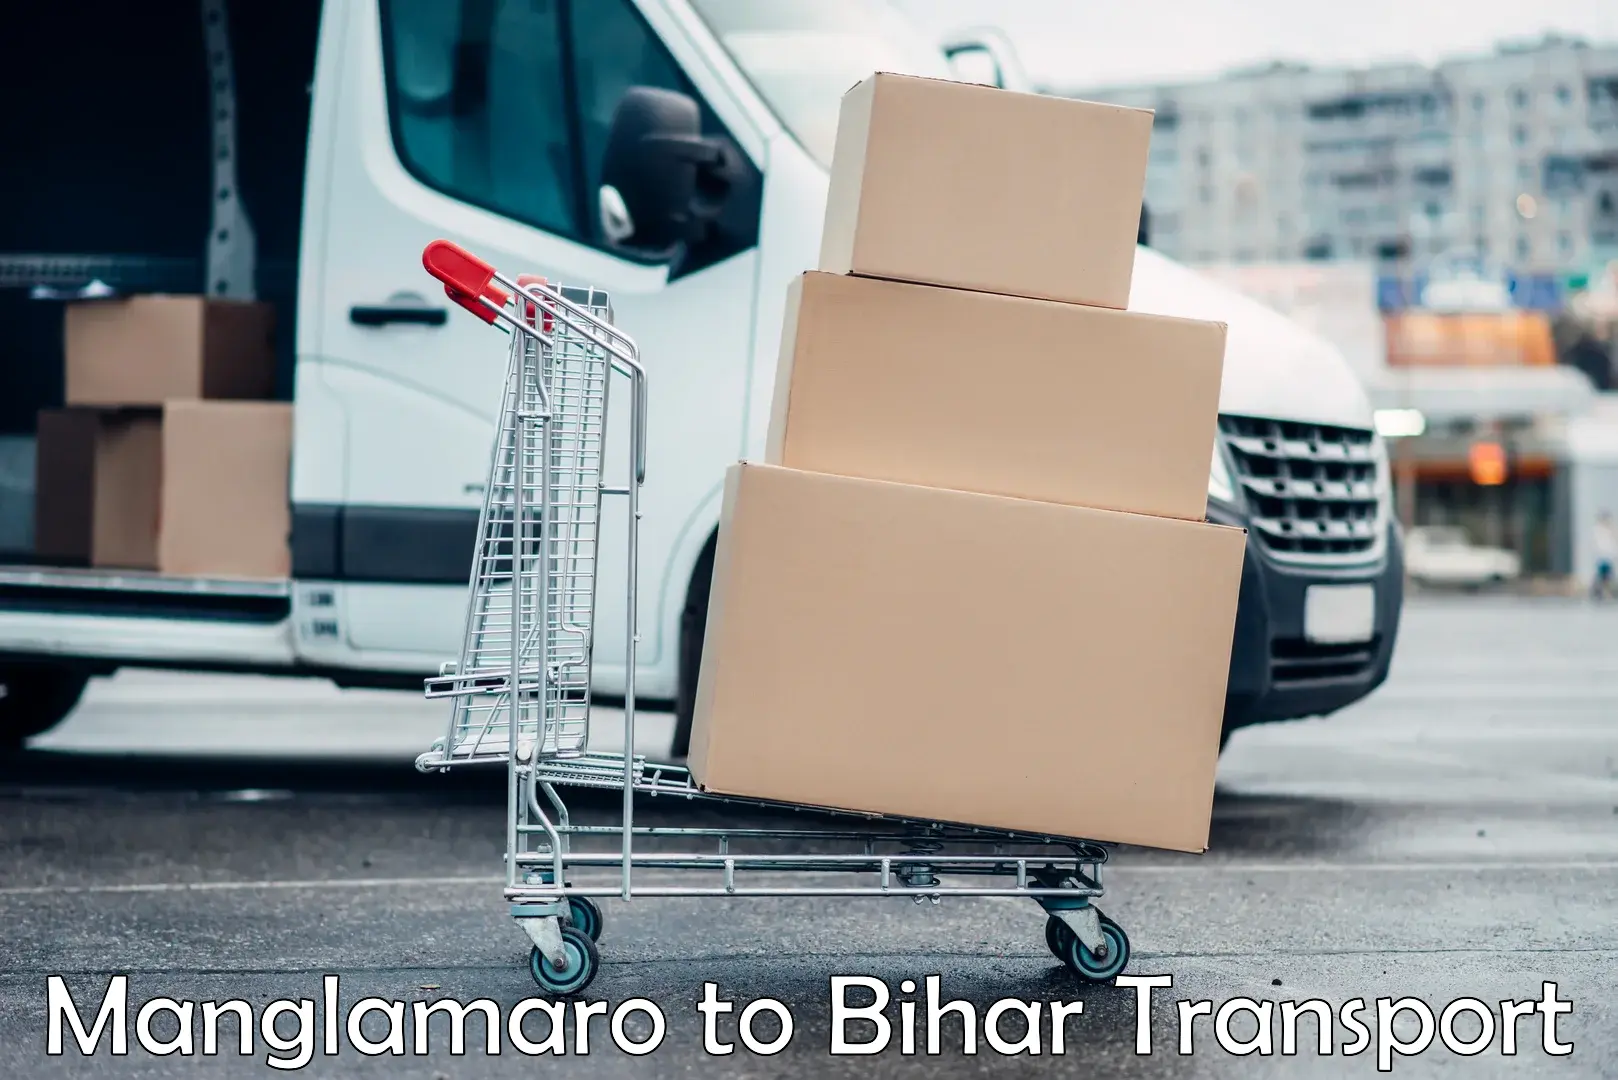 Cargo transport services Manglamaro to Arwal